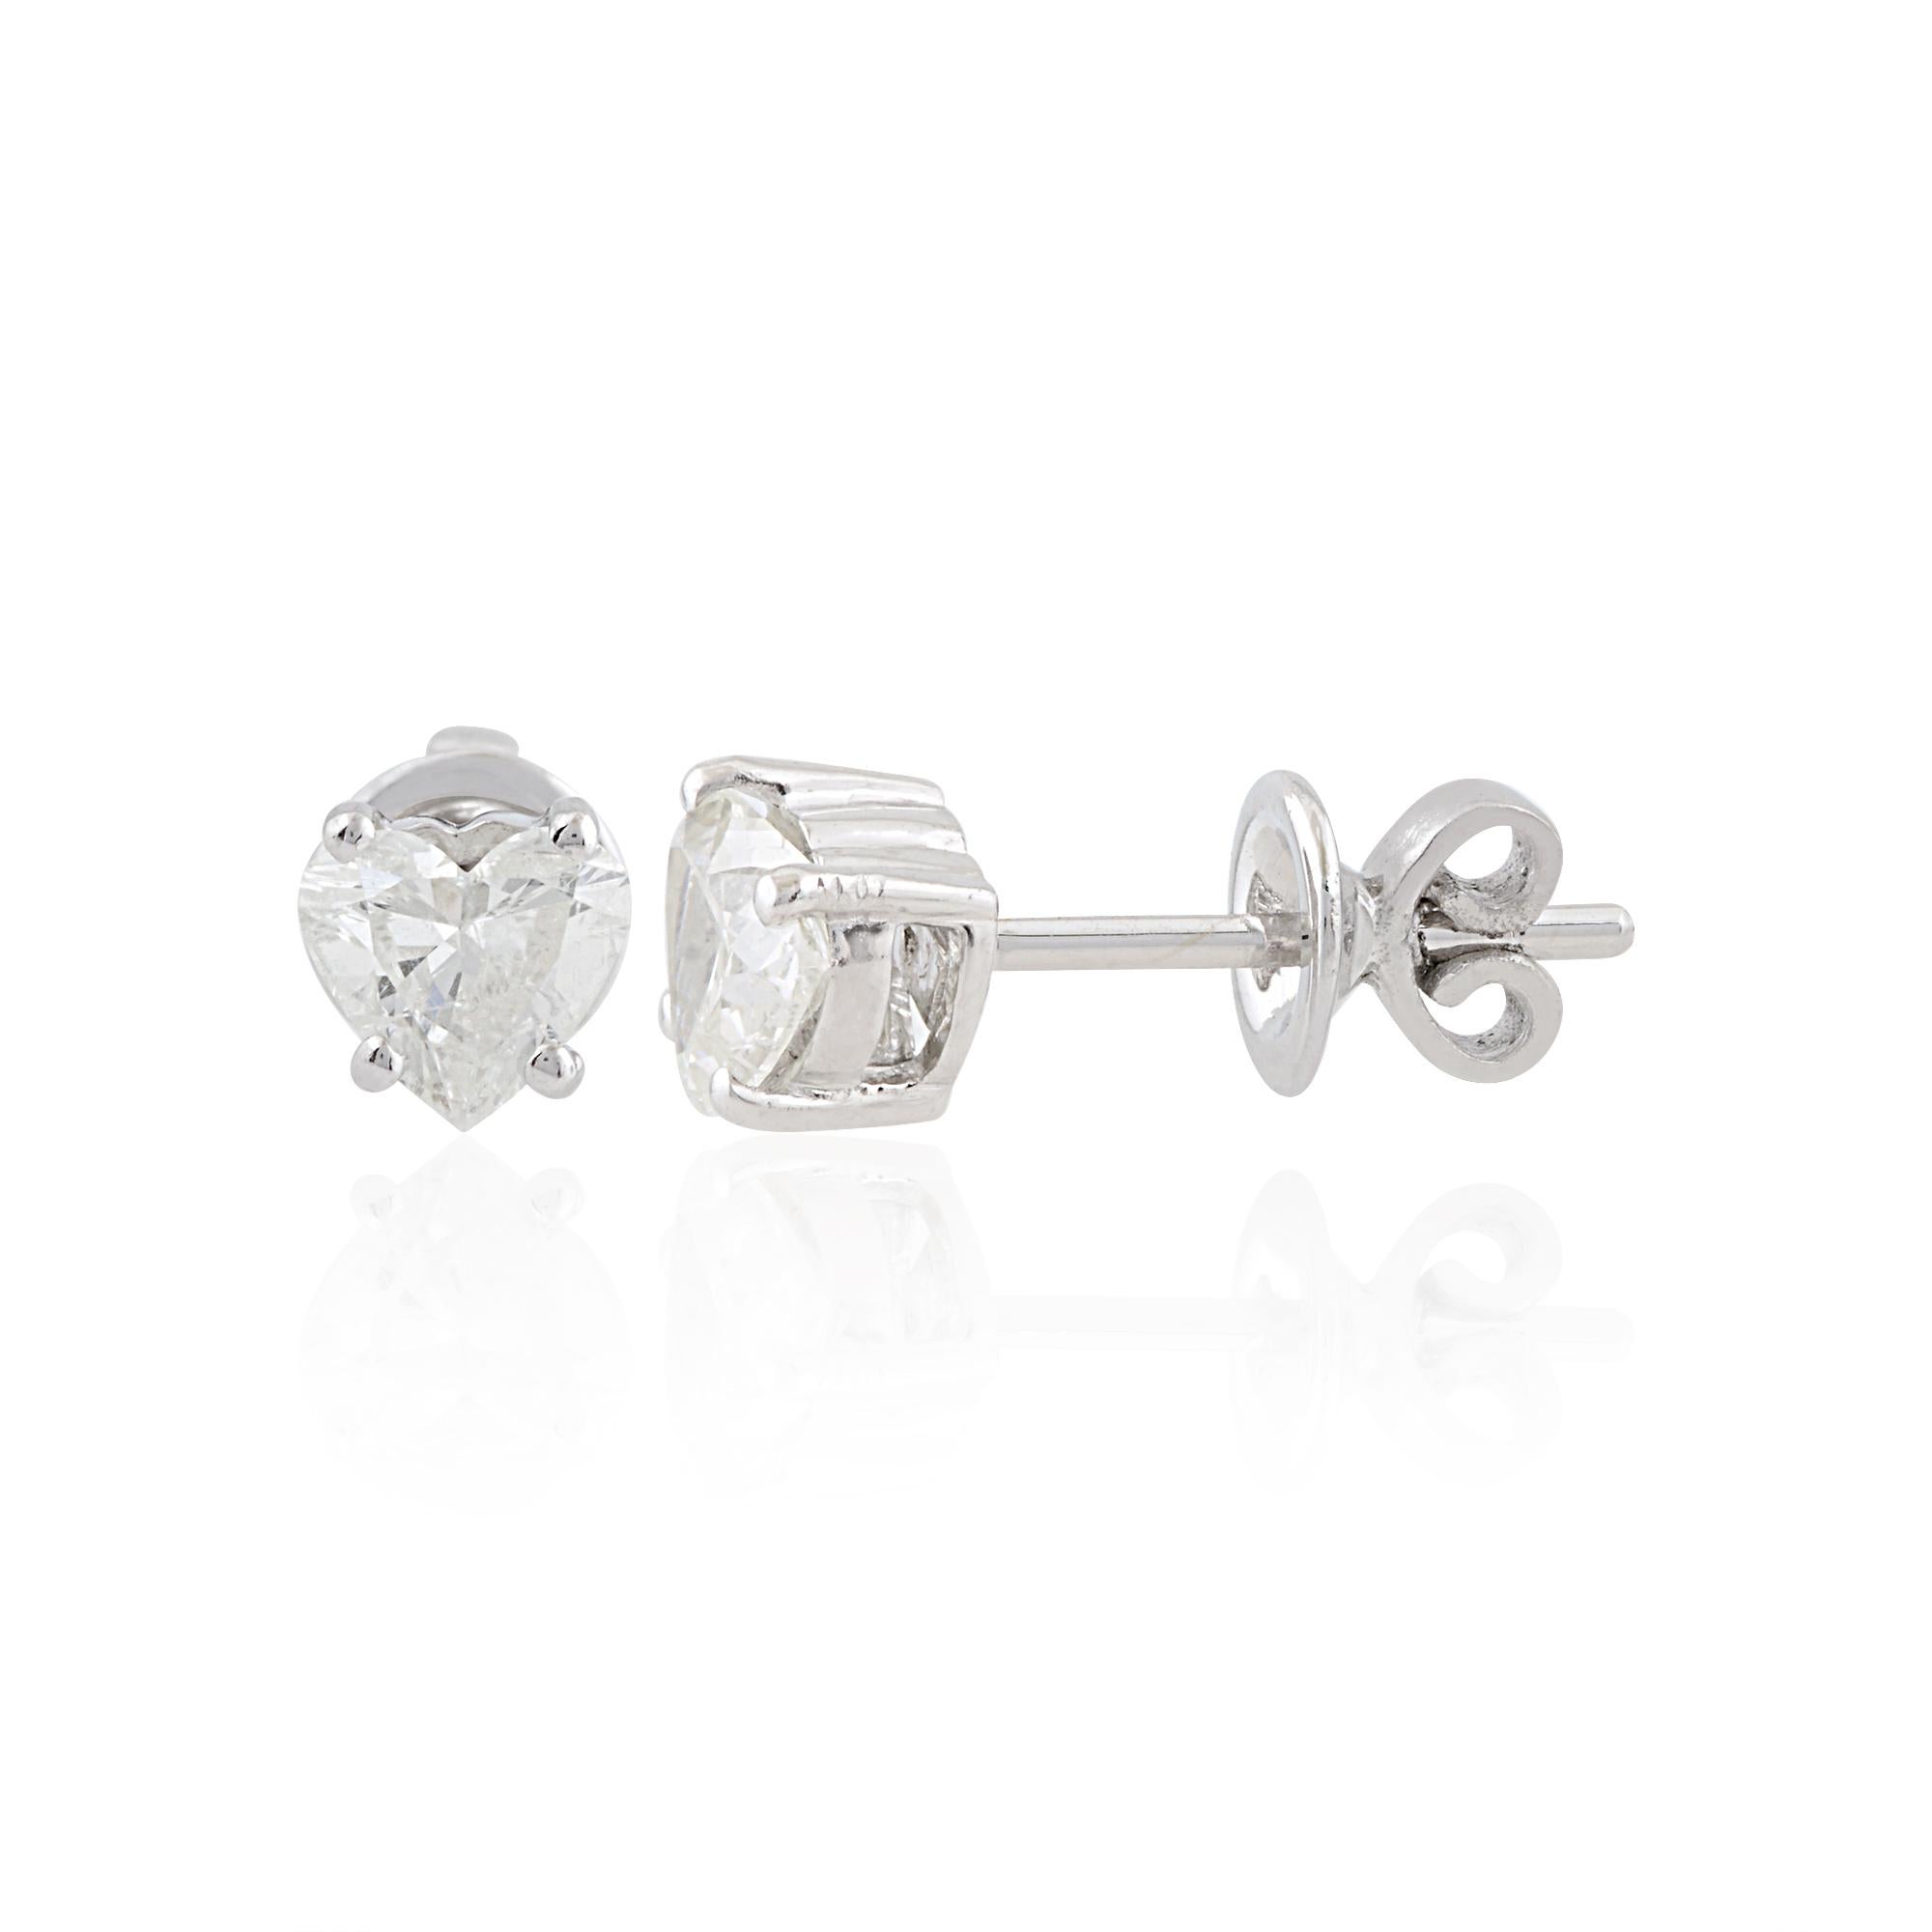 Coulées dans de l'or 10 carats, ces boucles d'oreilles exquises sont serties de 0,85 carats de diamants en forme de cœur étincelants.

Suivez la vitrine de Spectrum Jewels pour découvrir la dernière collection et les pièces exclusives. Spectrum